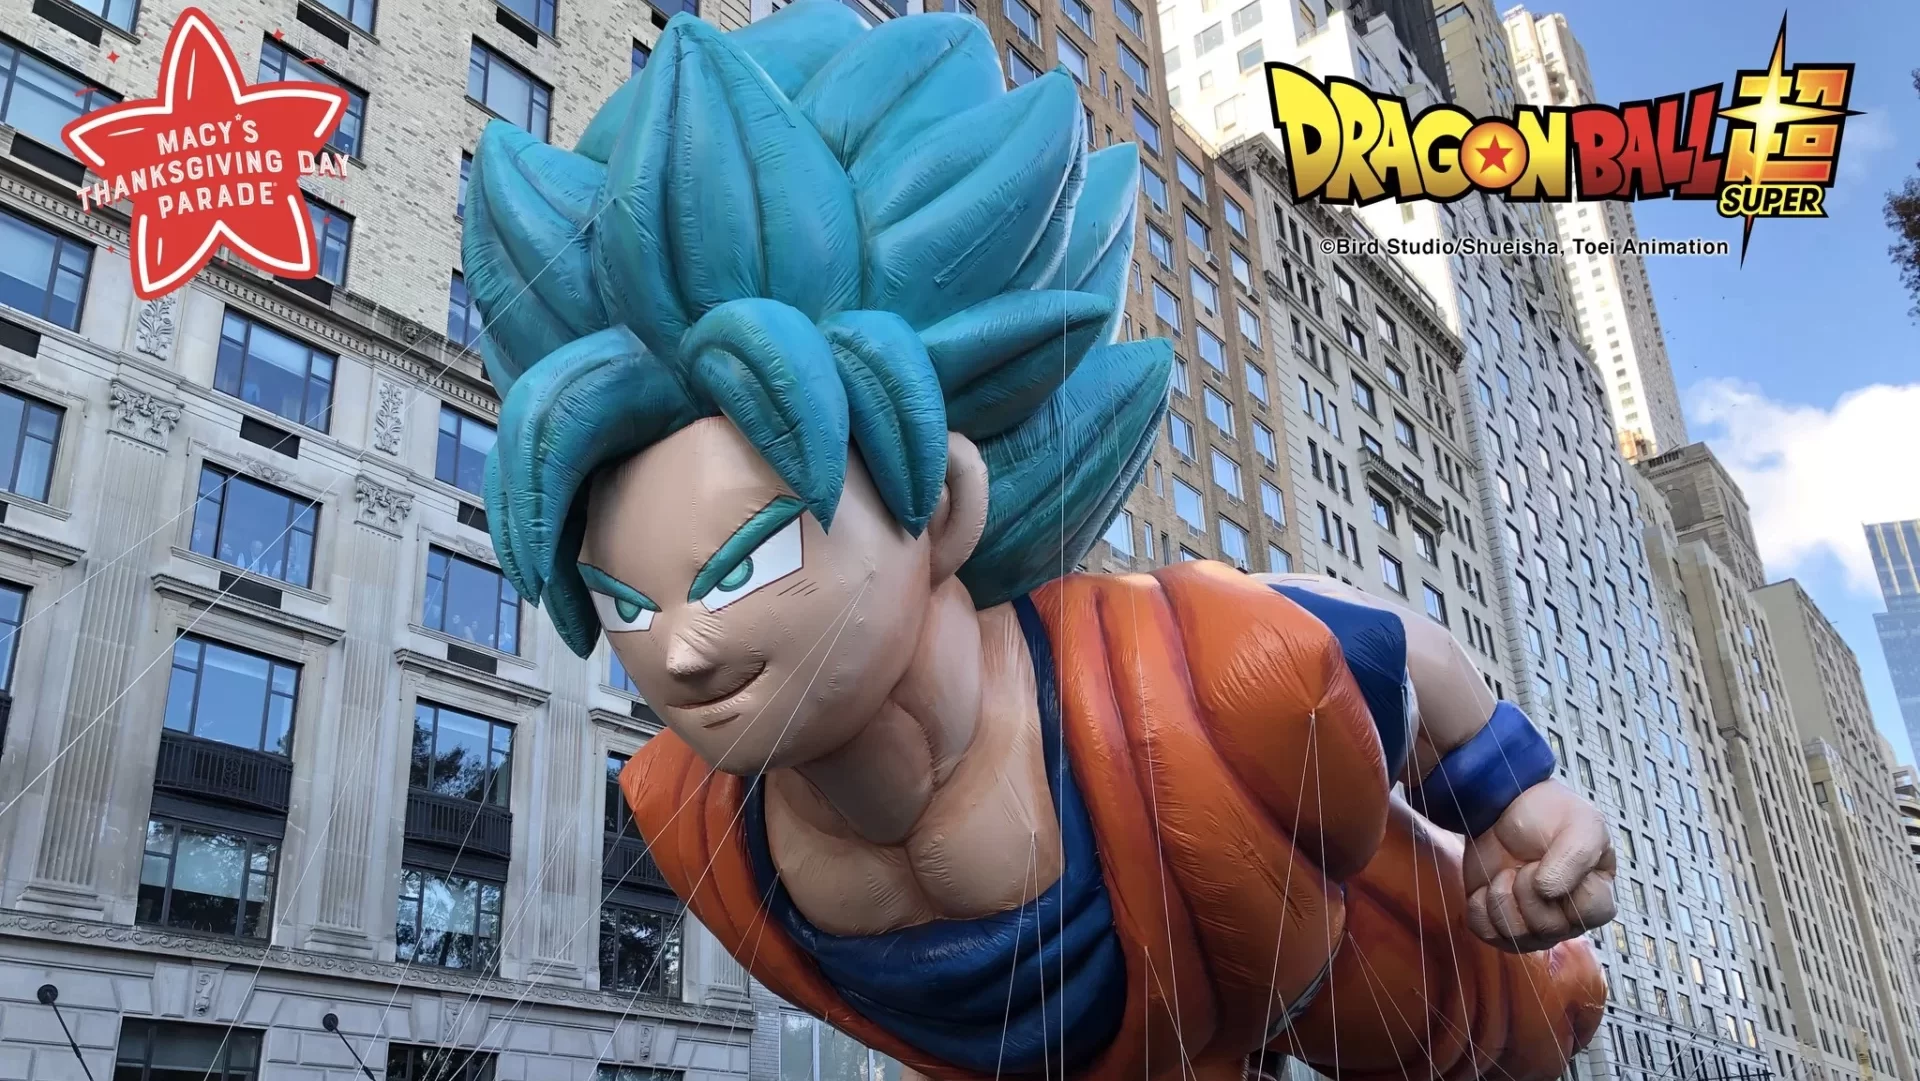 Goku-at-macys-parade